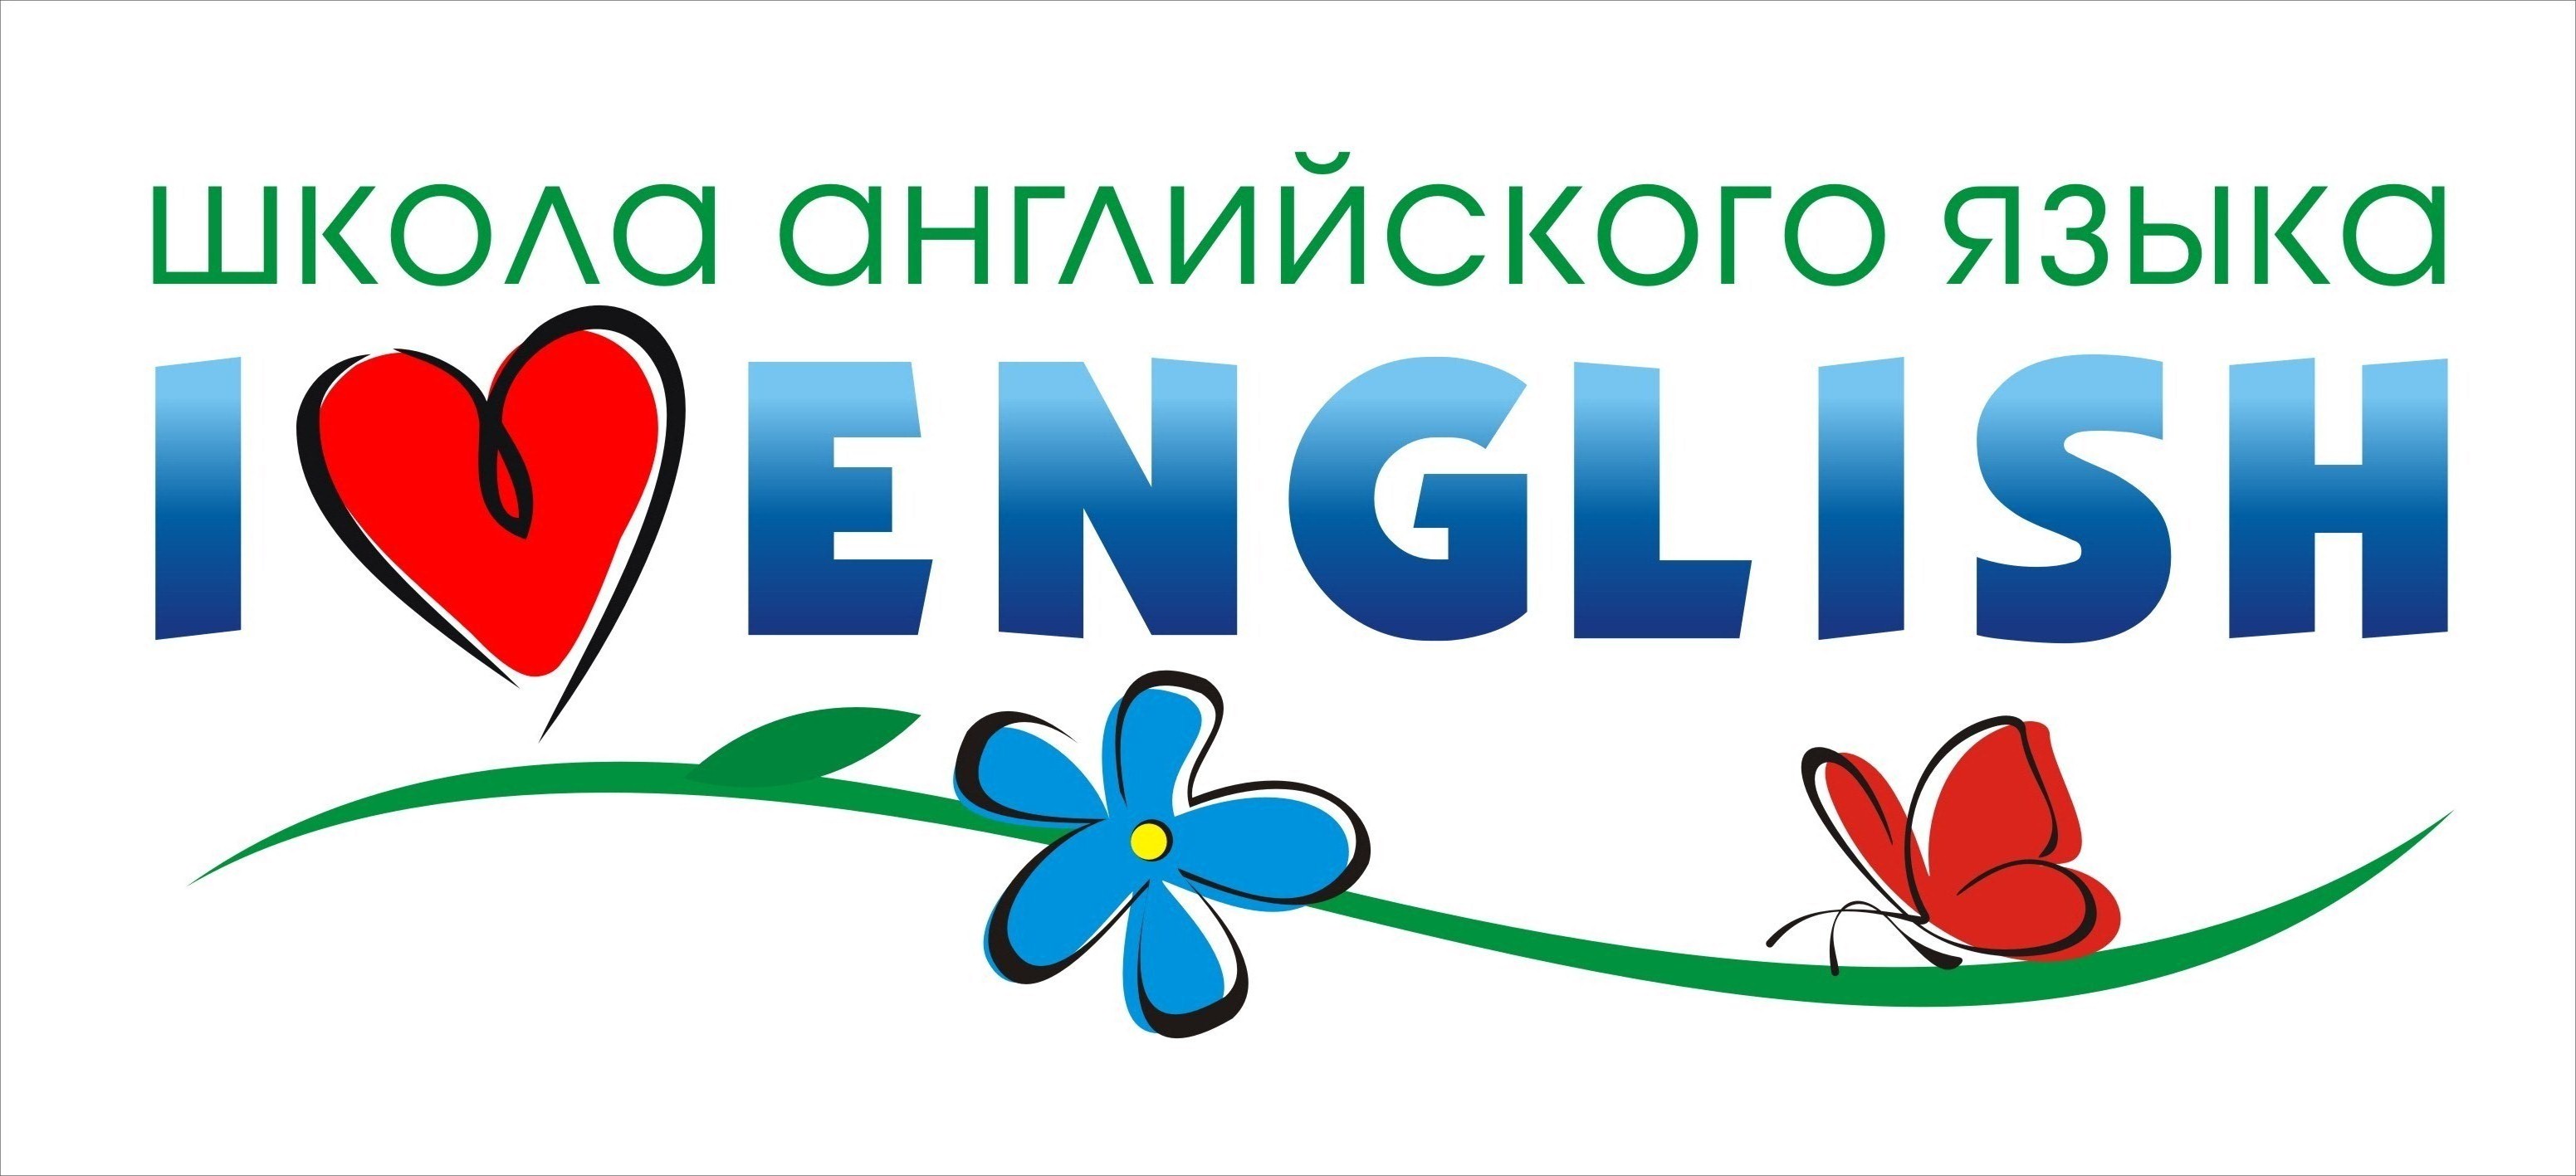 Люблю школу на английском. Я люблю English. Логотип школы английского языка. English надпись. Надписи на английском.